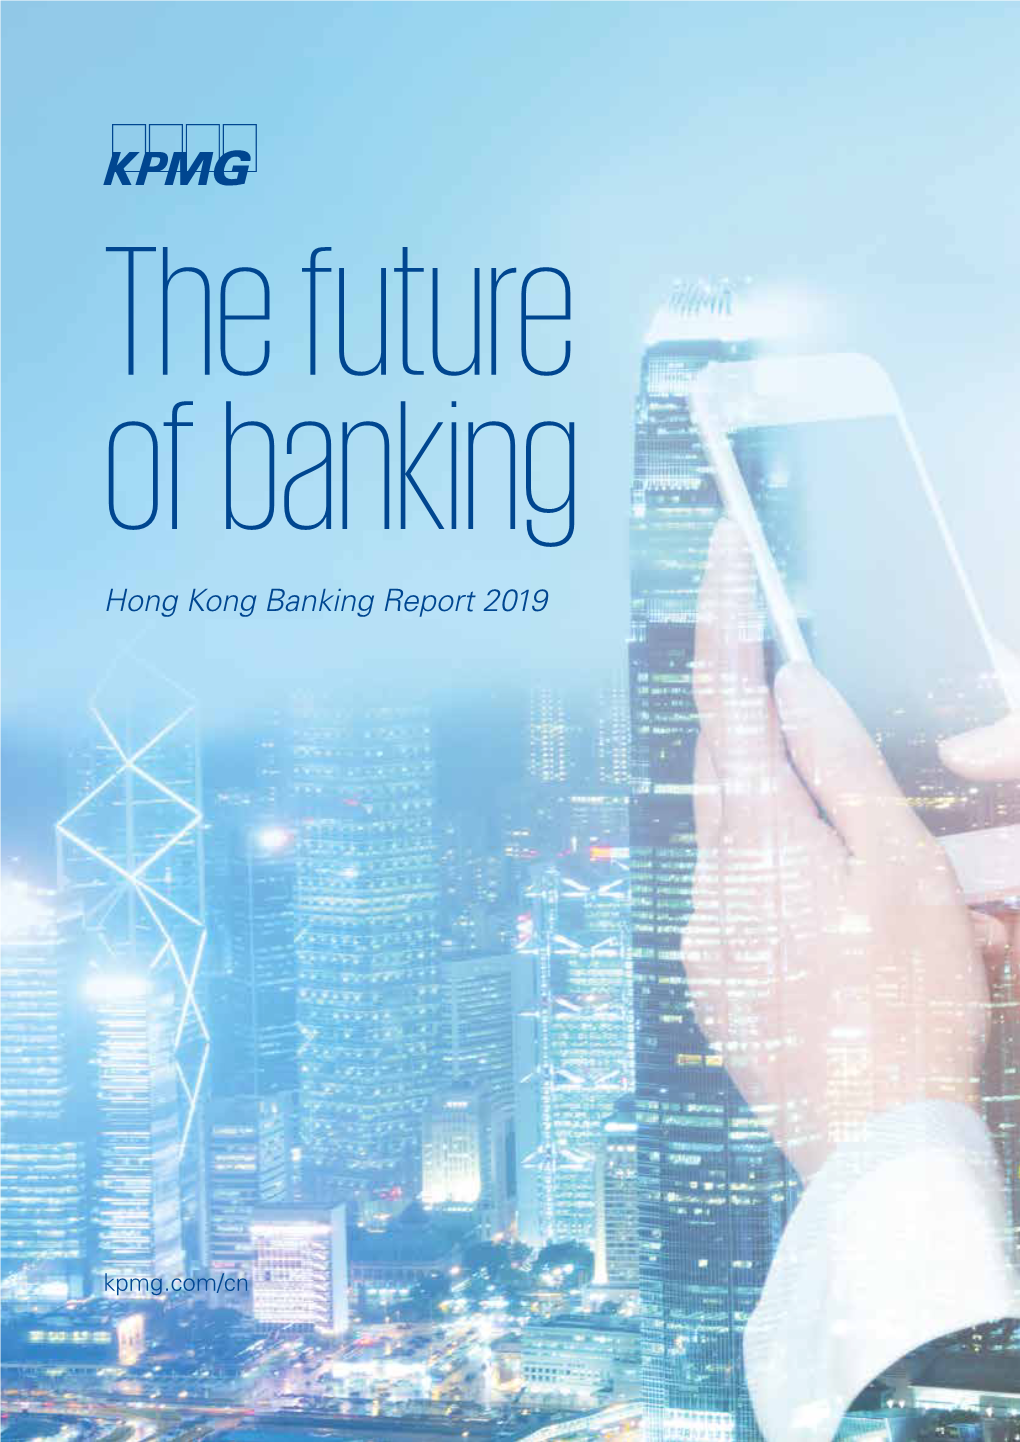 Hong Kong Banking Report 2019